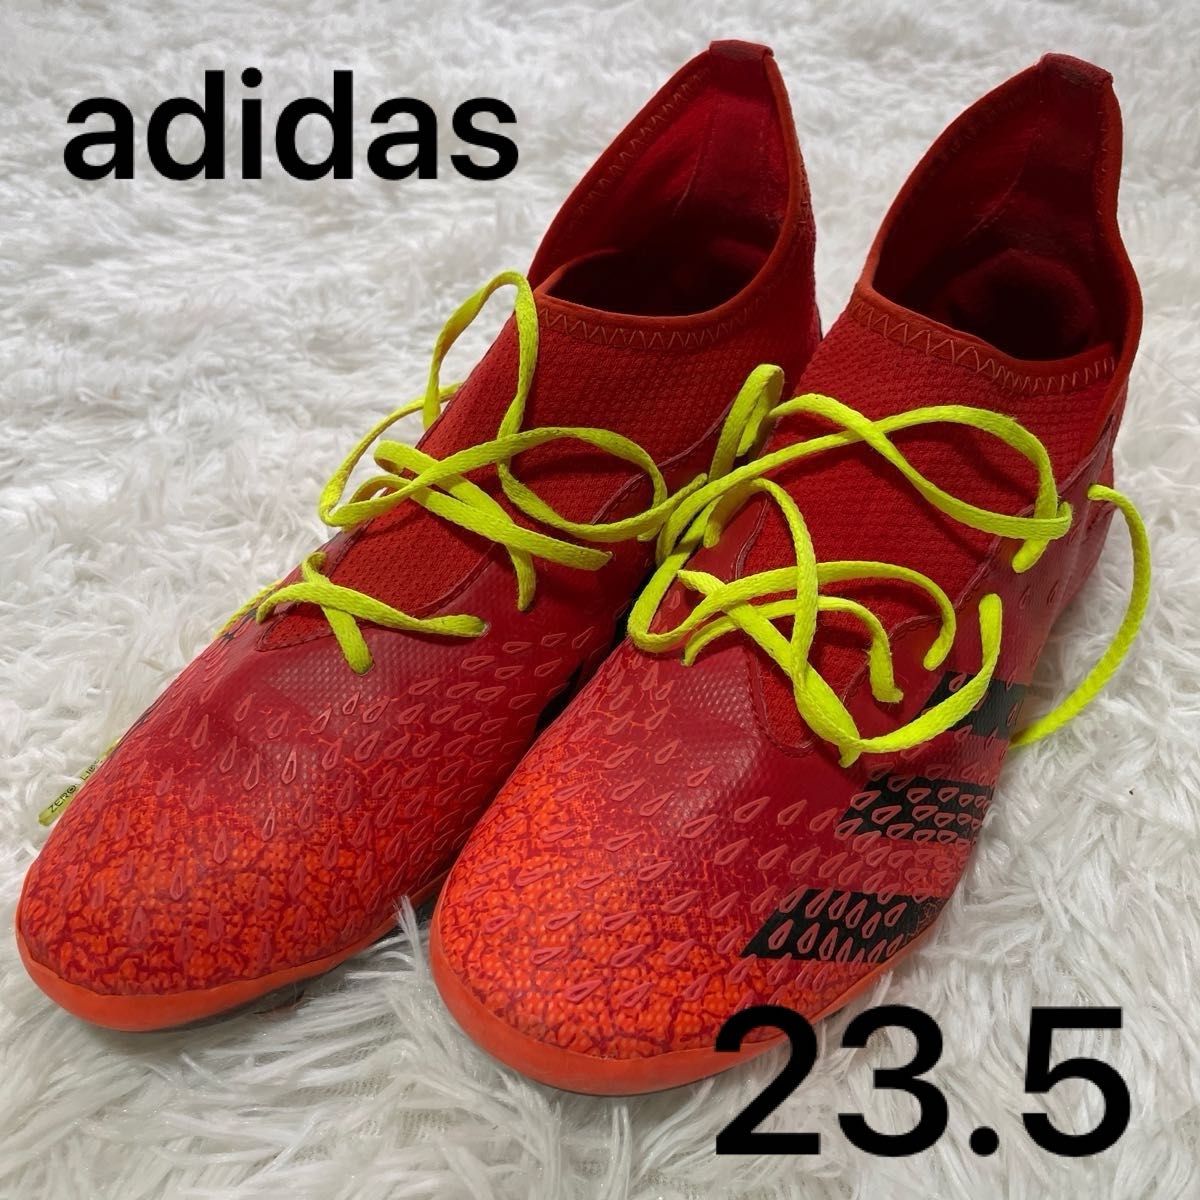 ★ adidas ★ アディダス スパイク フットサル サッカー 赤 オレンジ 23.5cm